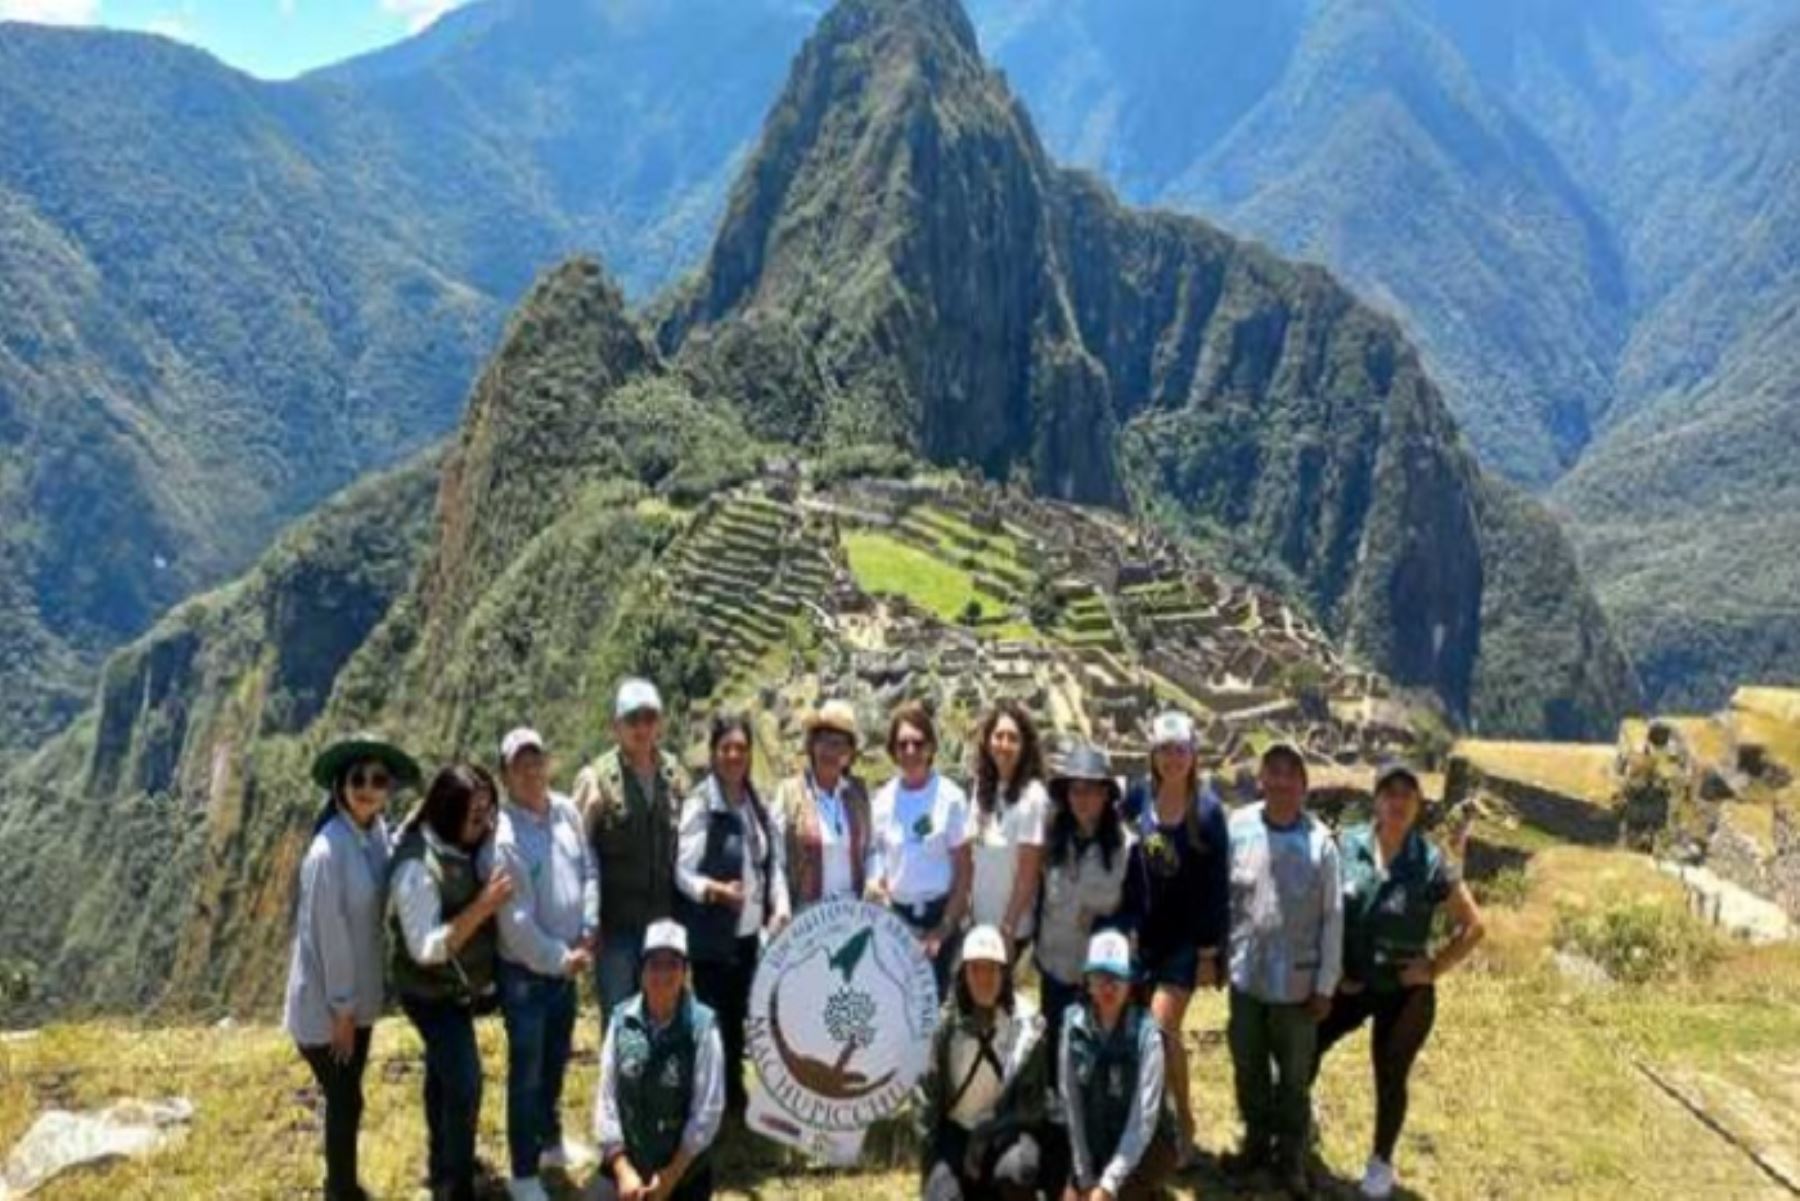 Sernanp y mujeres se unen para recuperar áreas degradadas en santuario de Machu Picchu